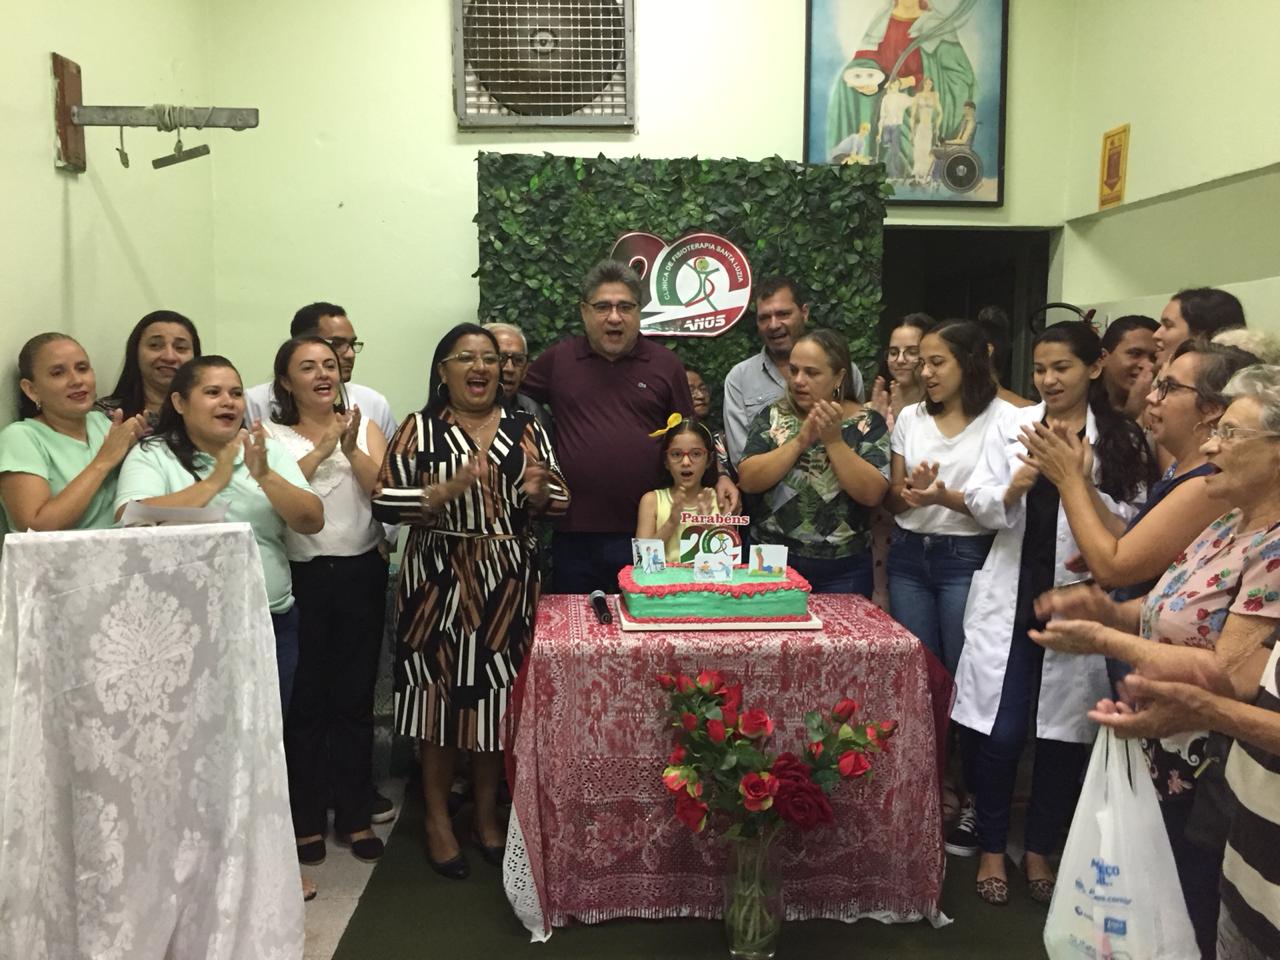 João Mádison participa de aniversário de clínica na zona sul